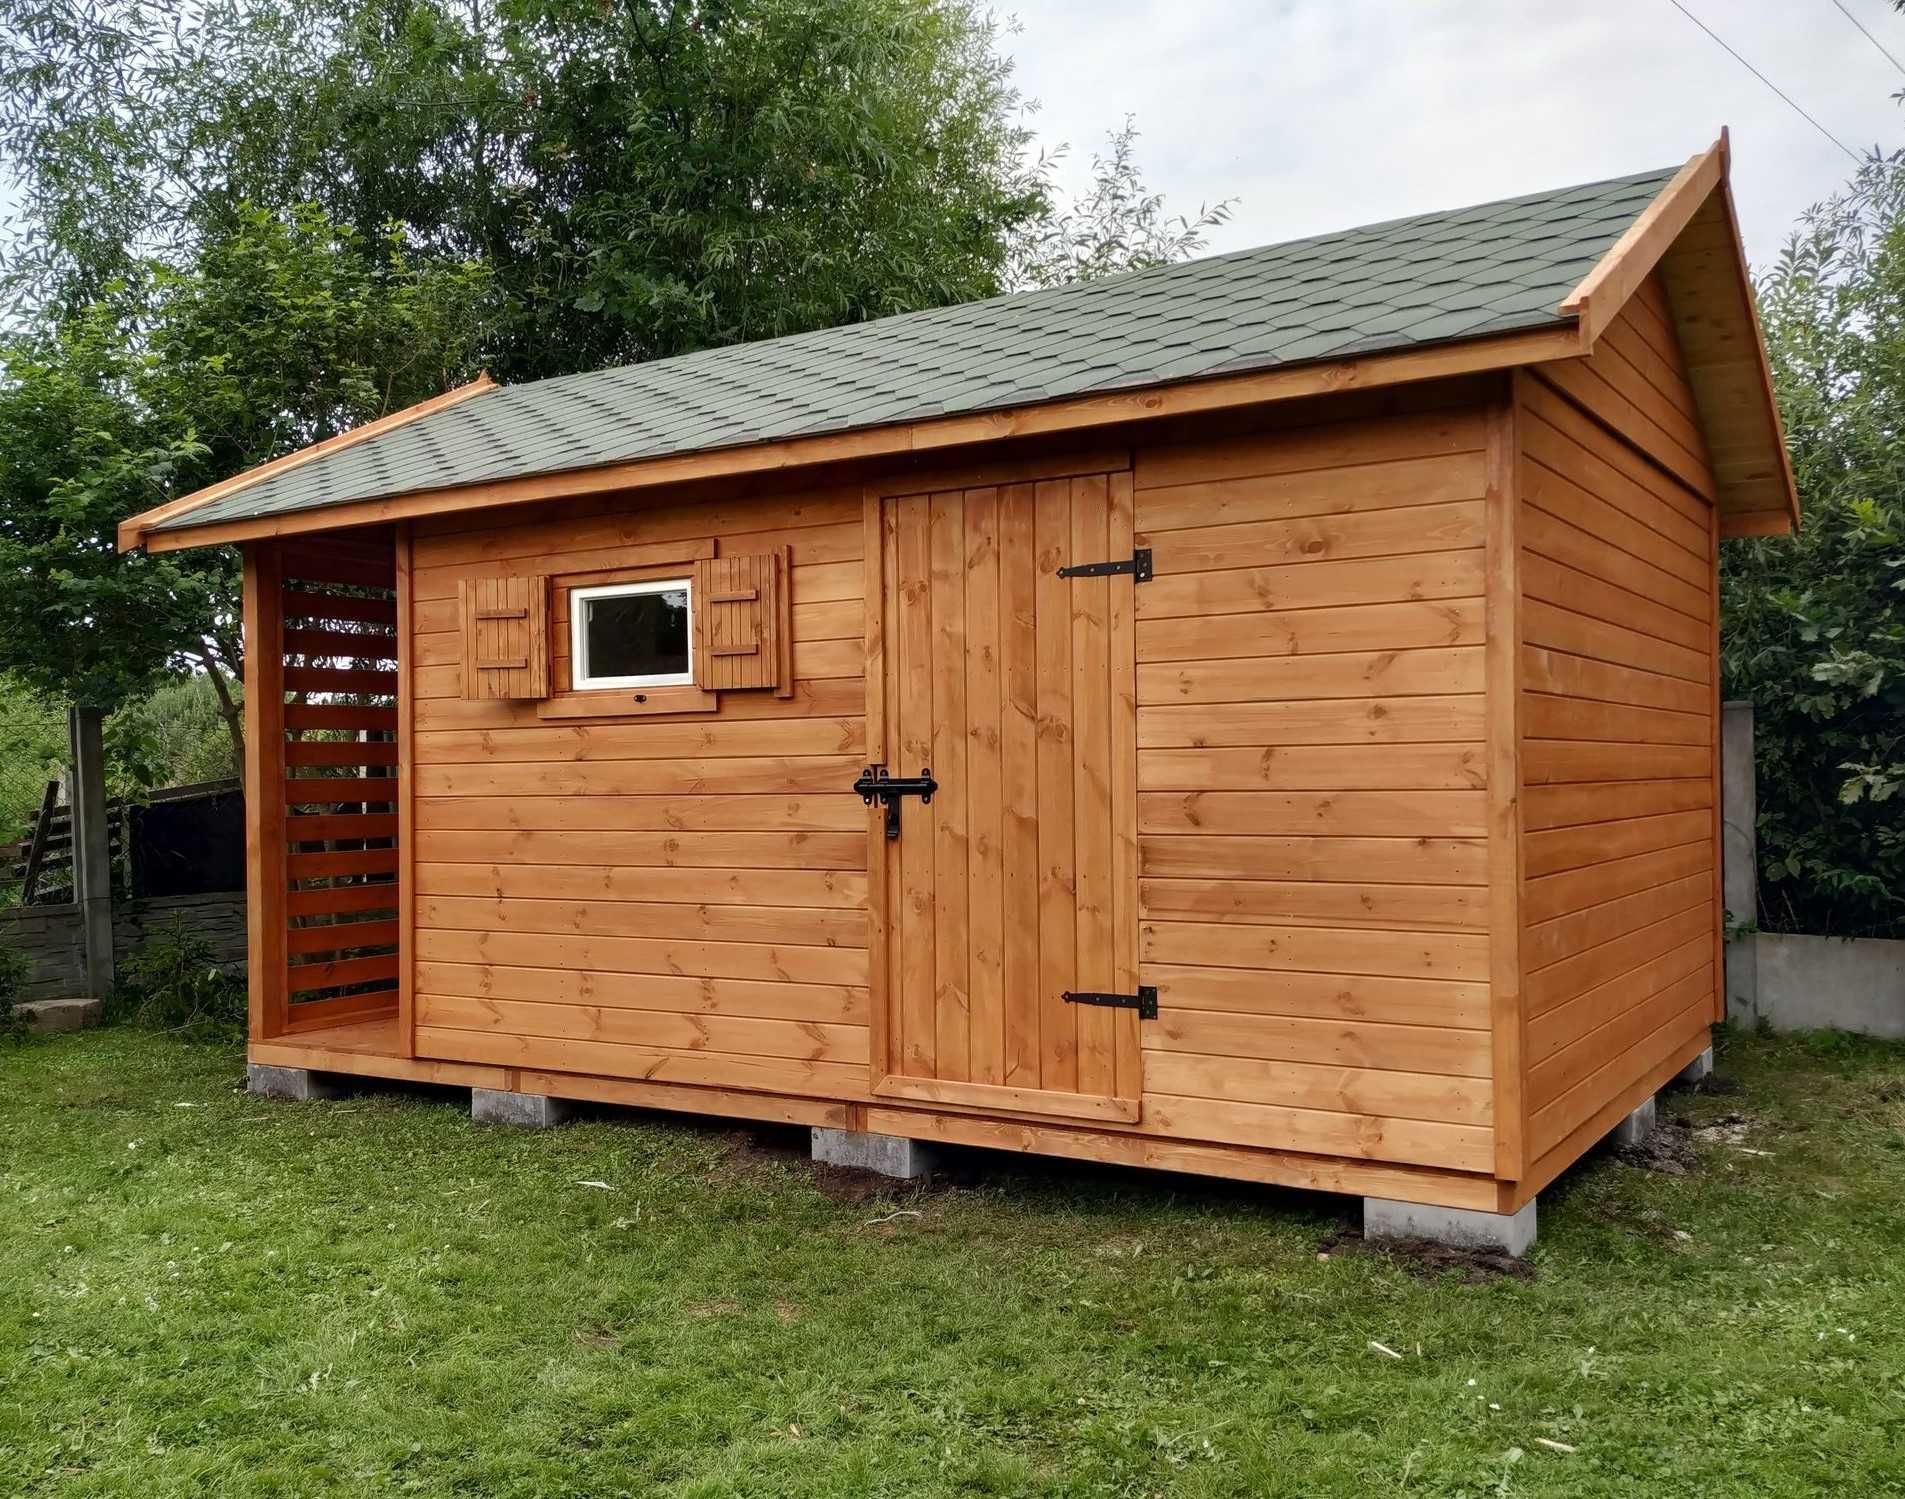 nowoczesne drewniane domki wiaty zadaszenia altany 3x5 producent